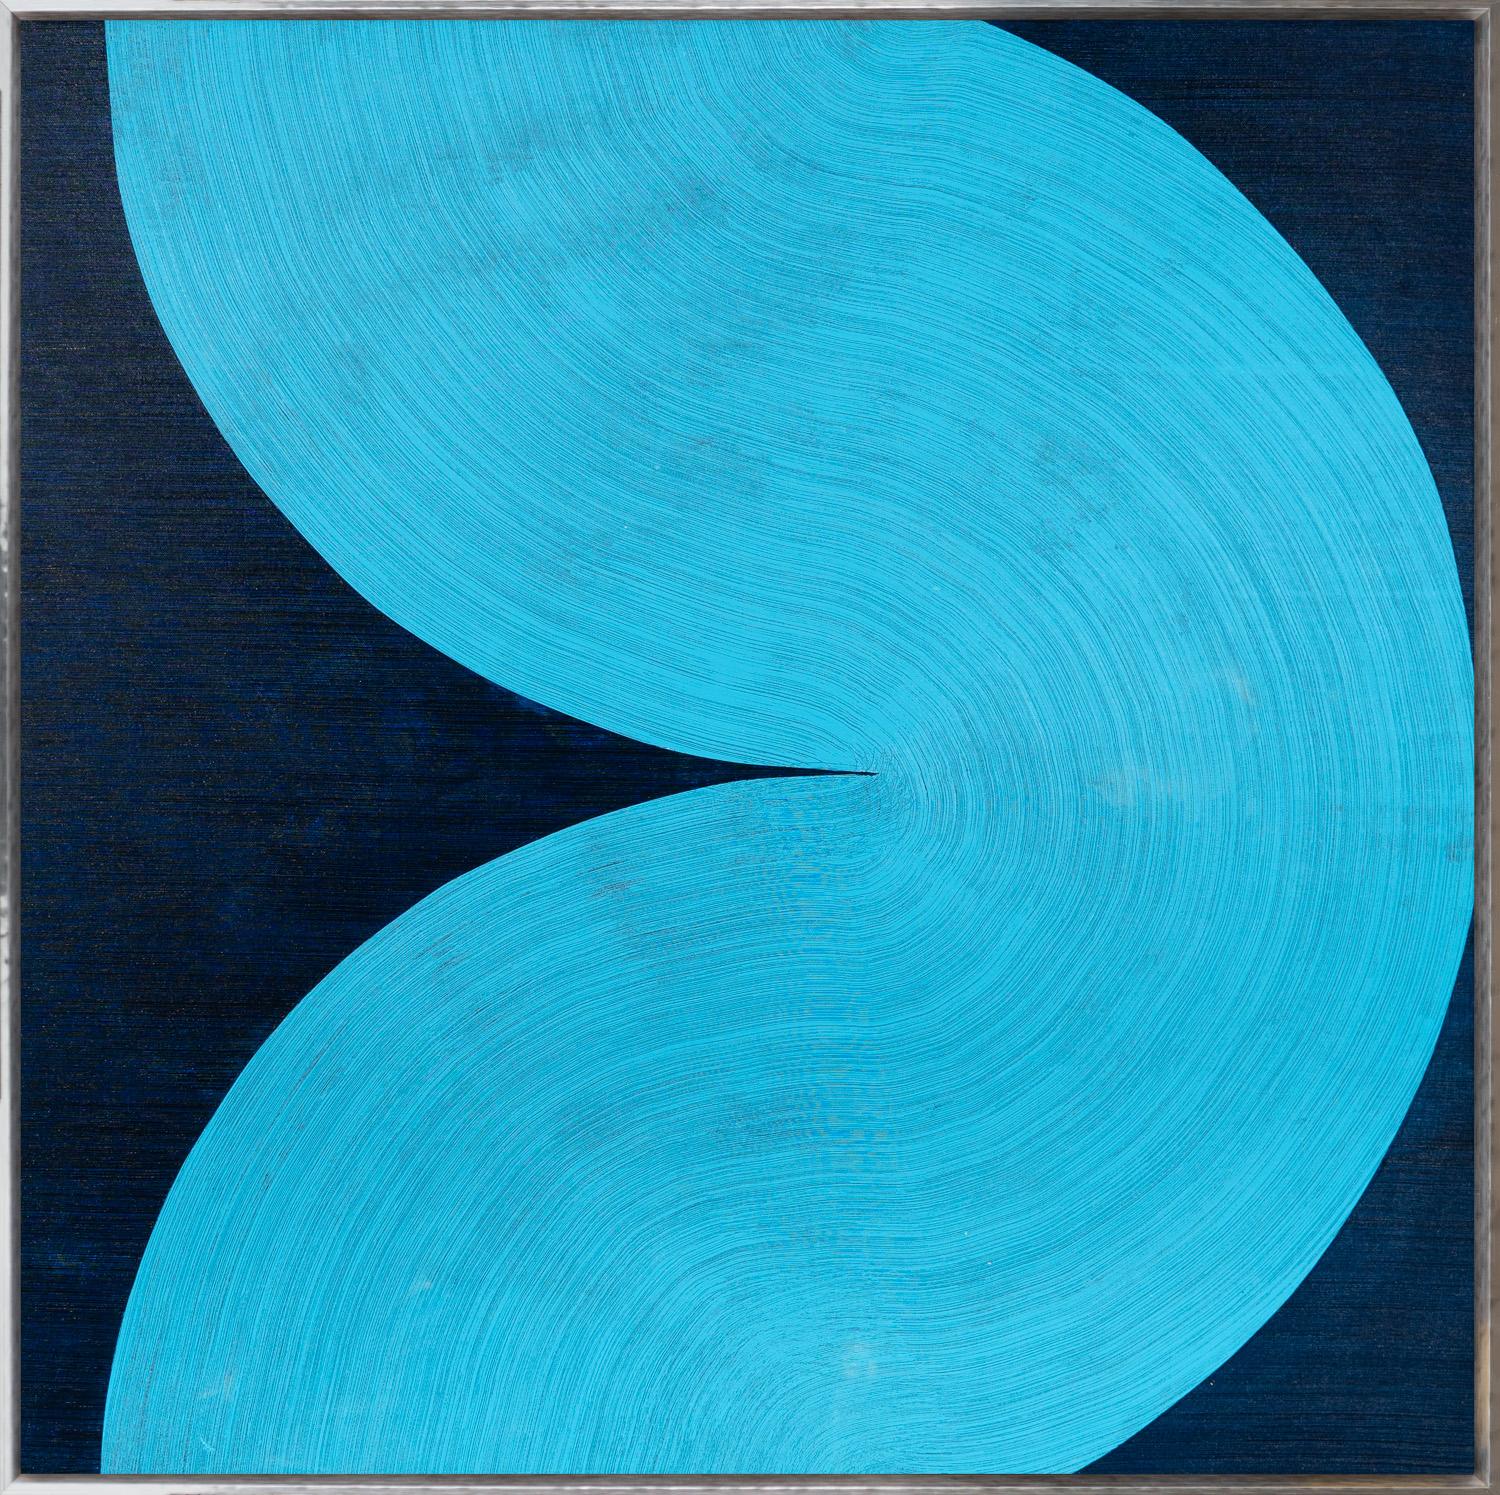 David Skillicorn Abstract Painting - "Harmonia 30-5-I" Contemporary Abstract Framed Acrylic on Canvas